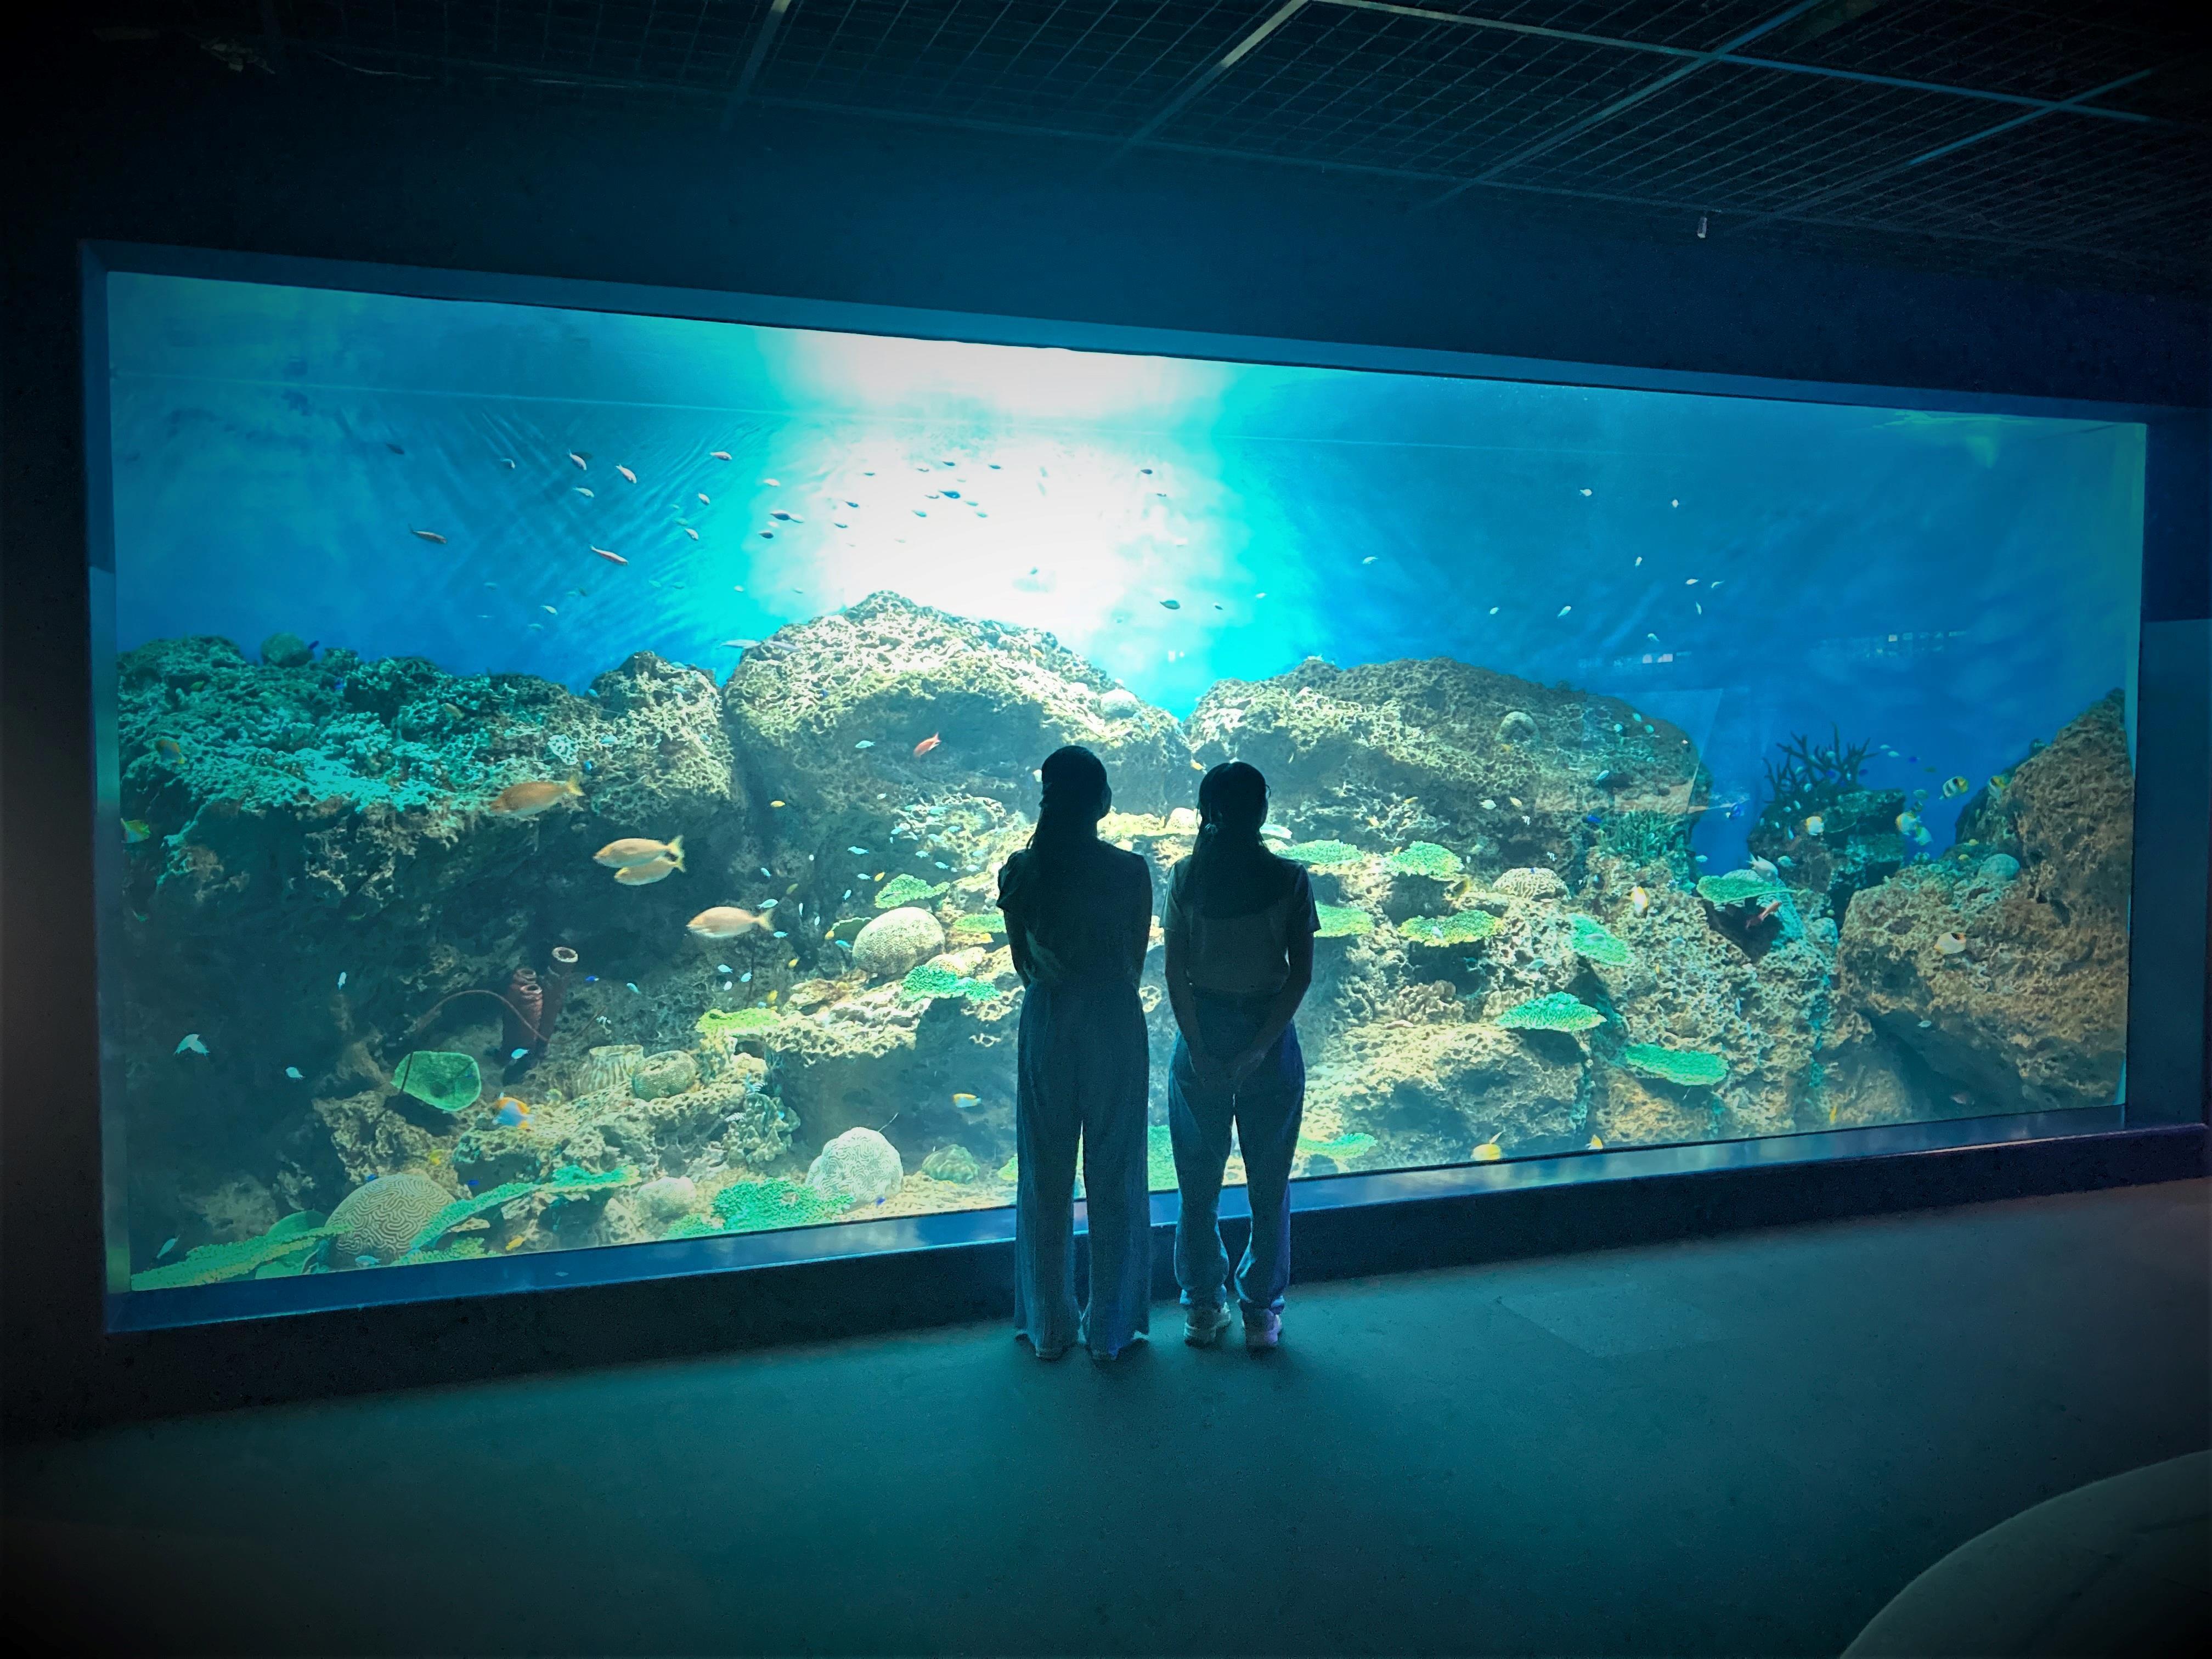 アクアワールド茨城県大洗水族館の 「きらめく珊瑚礁の魚たち」水槽が7 